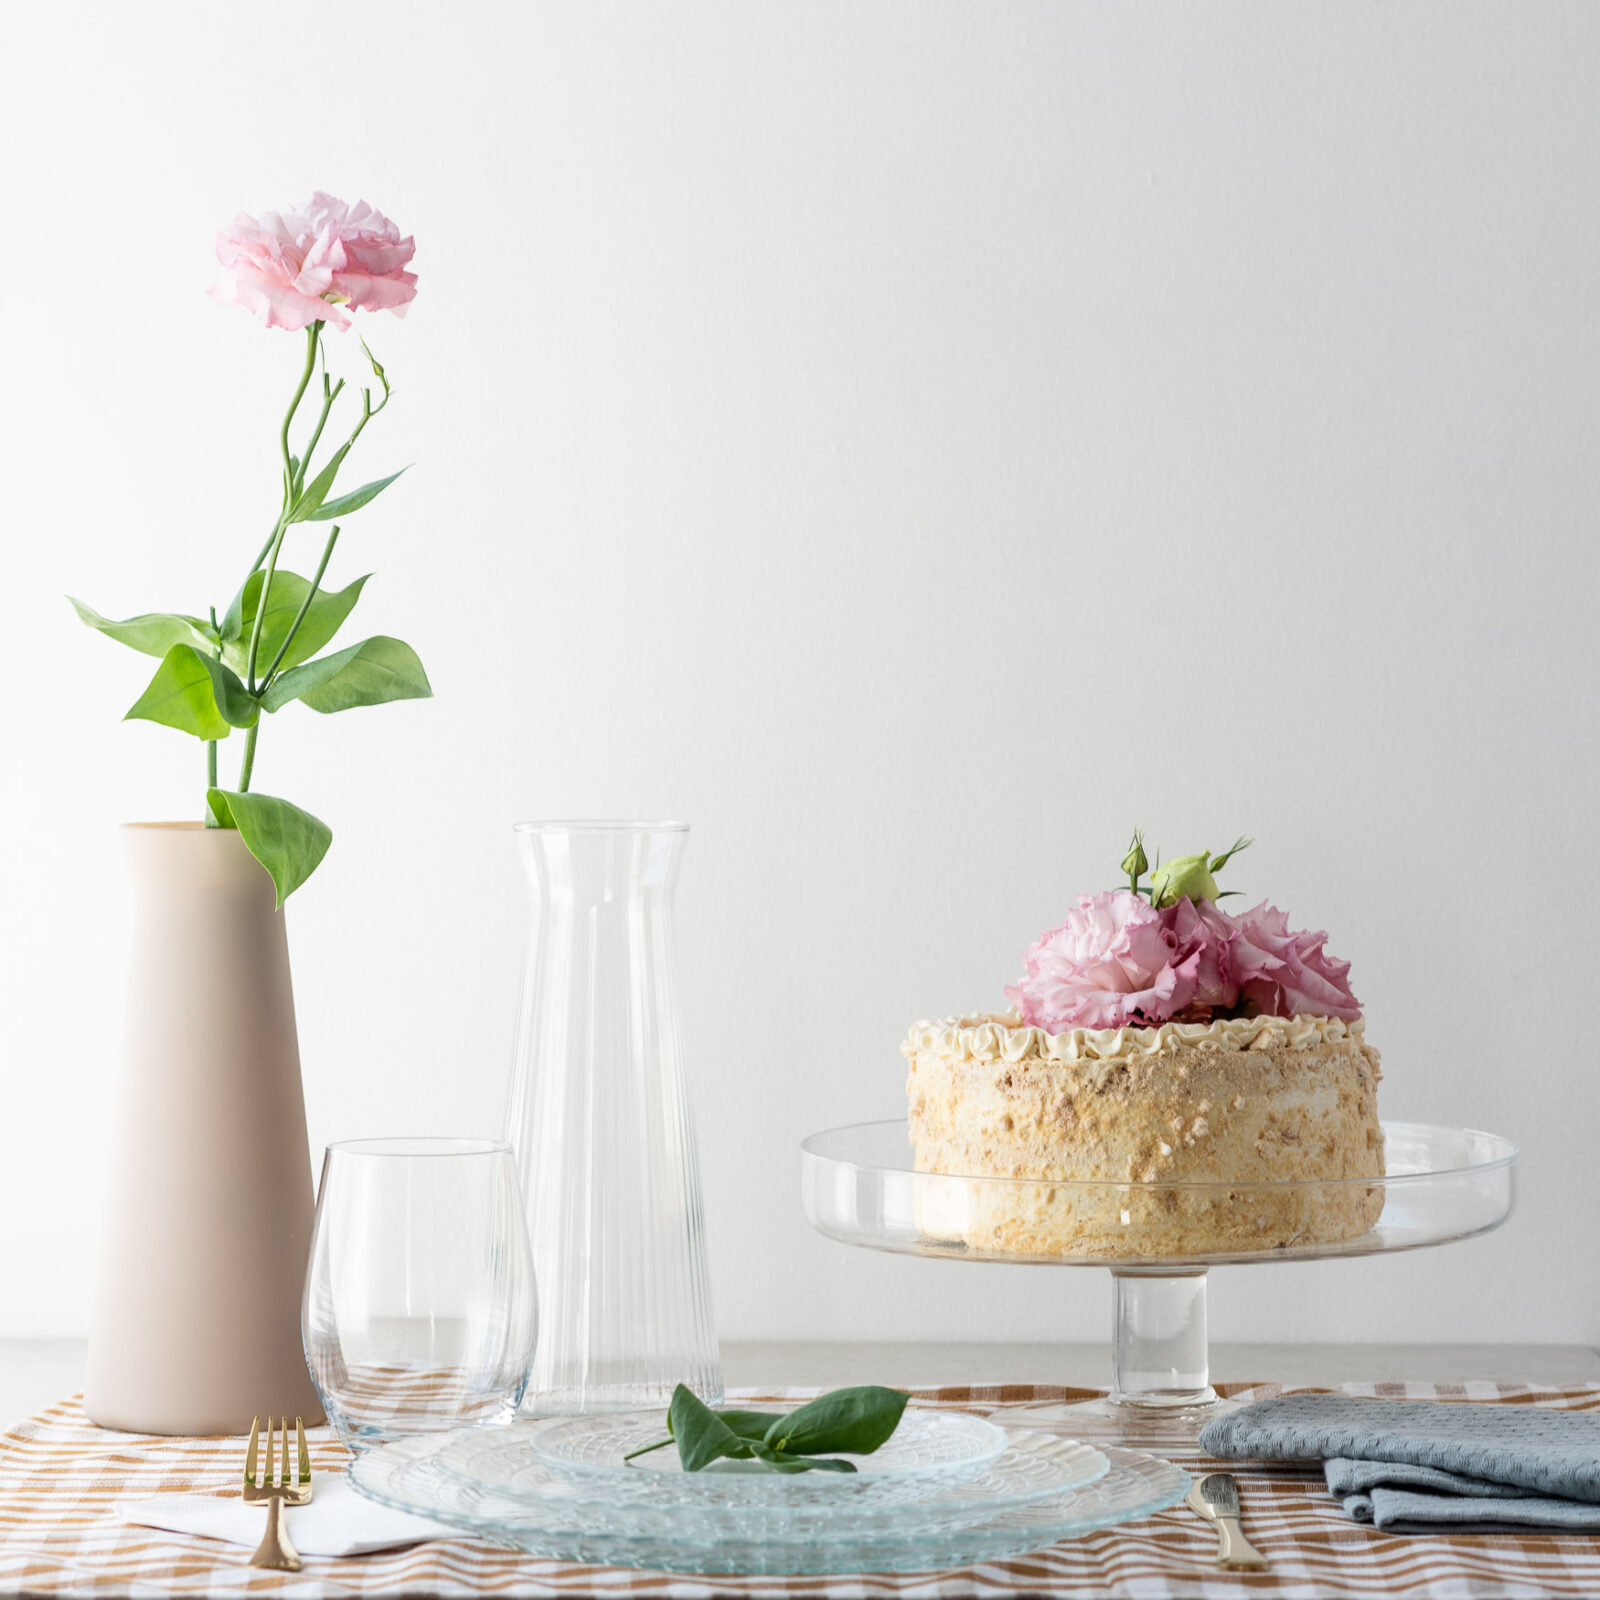 Patera szklana, wazon, karafka jako elementy dekoracji stołu